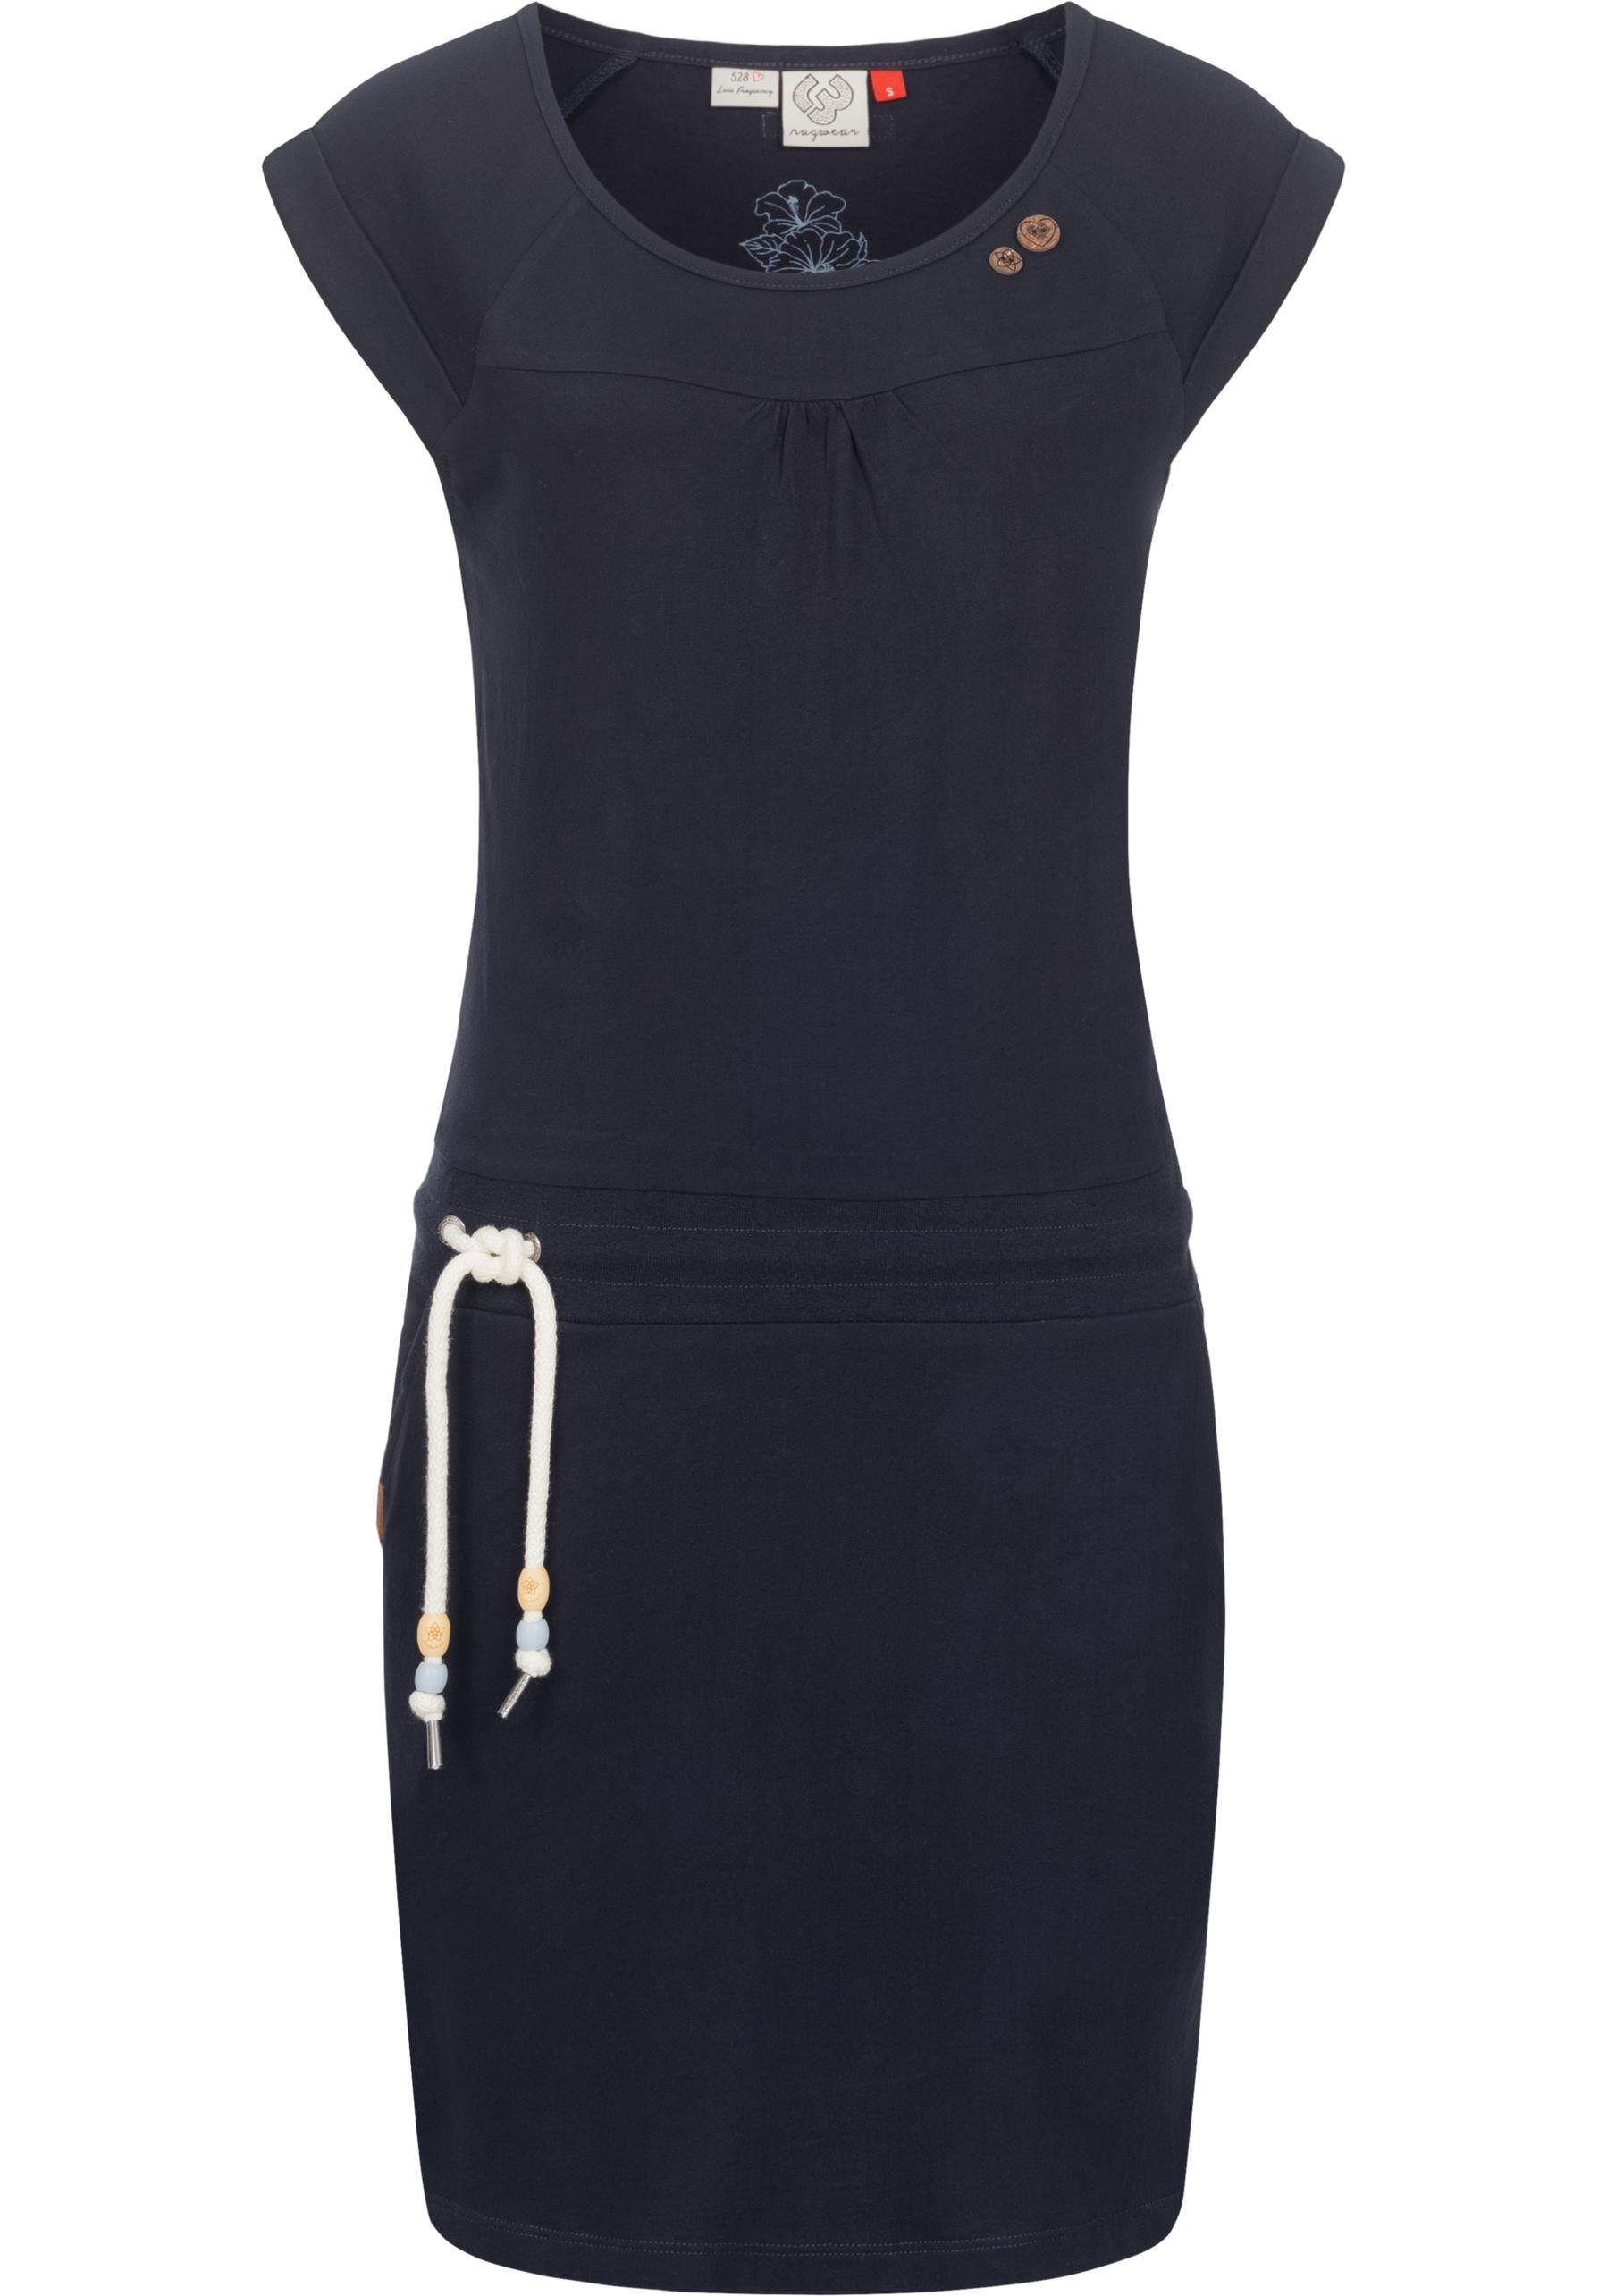 Ragwear Sommerkleid Penelope leichtes Baumwoll Kleid mit Print darkblue | Wickelkleider